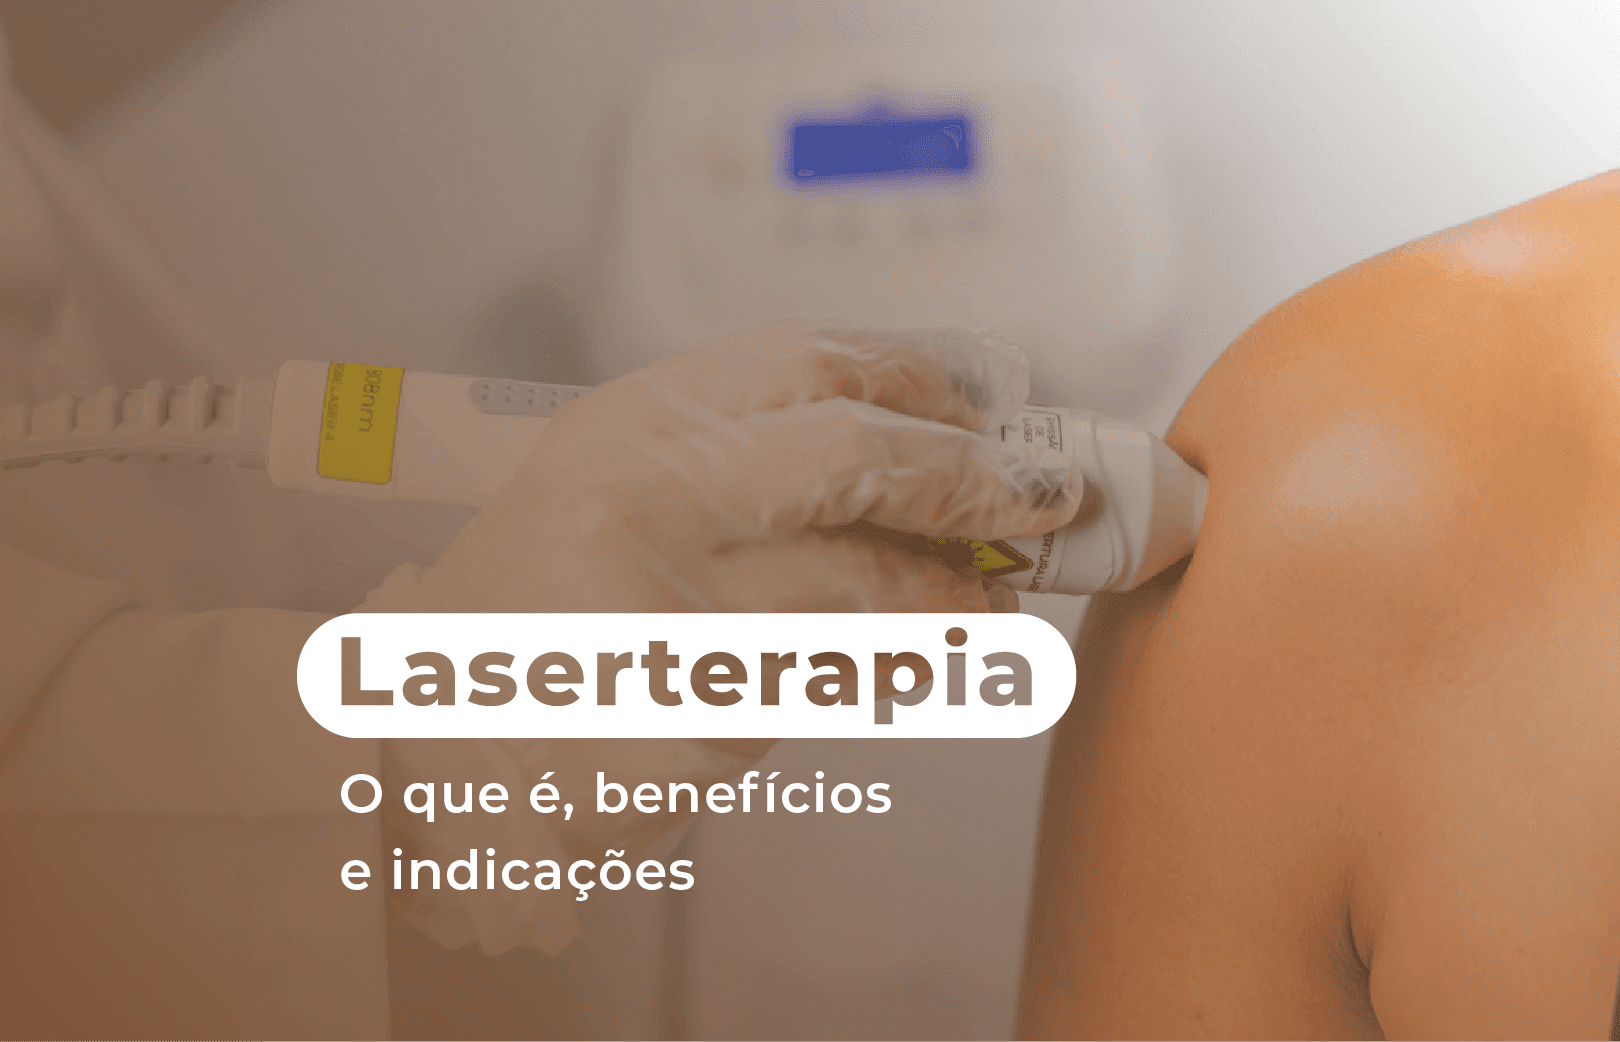 Laserterapia: o que é, benefícios e indicações